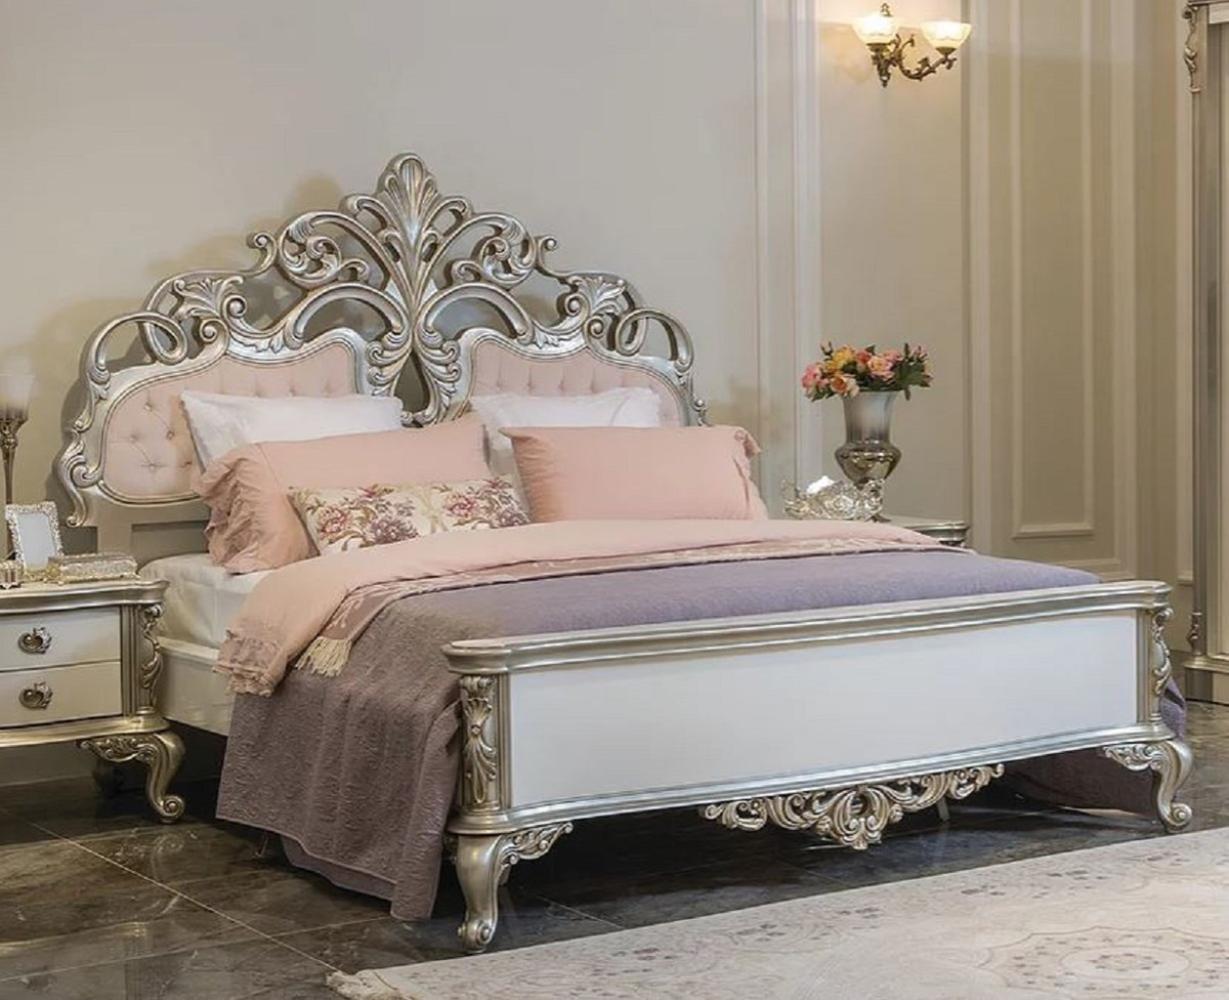 Casa Padrino Luxus Barock Doppelbett Rosa / Weiß / Silber 200 x 228 x H. 175 cm - Edles Massivholz Bett mit Kopfteil - Prunkvolle Schlafzimmer Möbel im Barockstil Bild 1